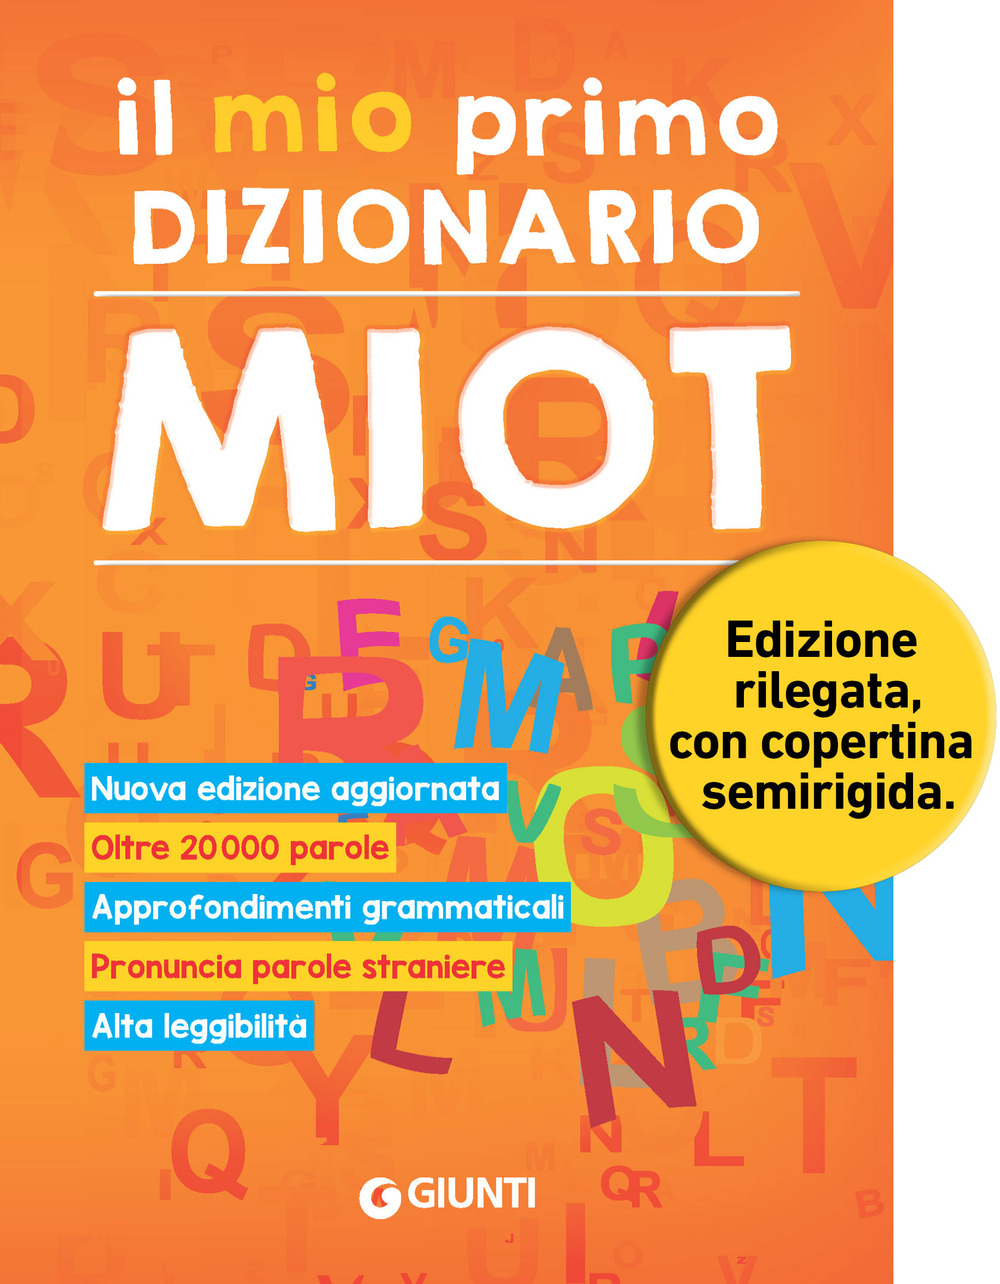 Image of Il mio primo dizionario. Nuovo MIOT